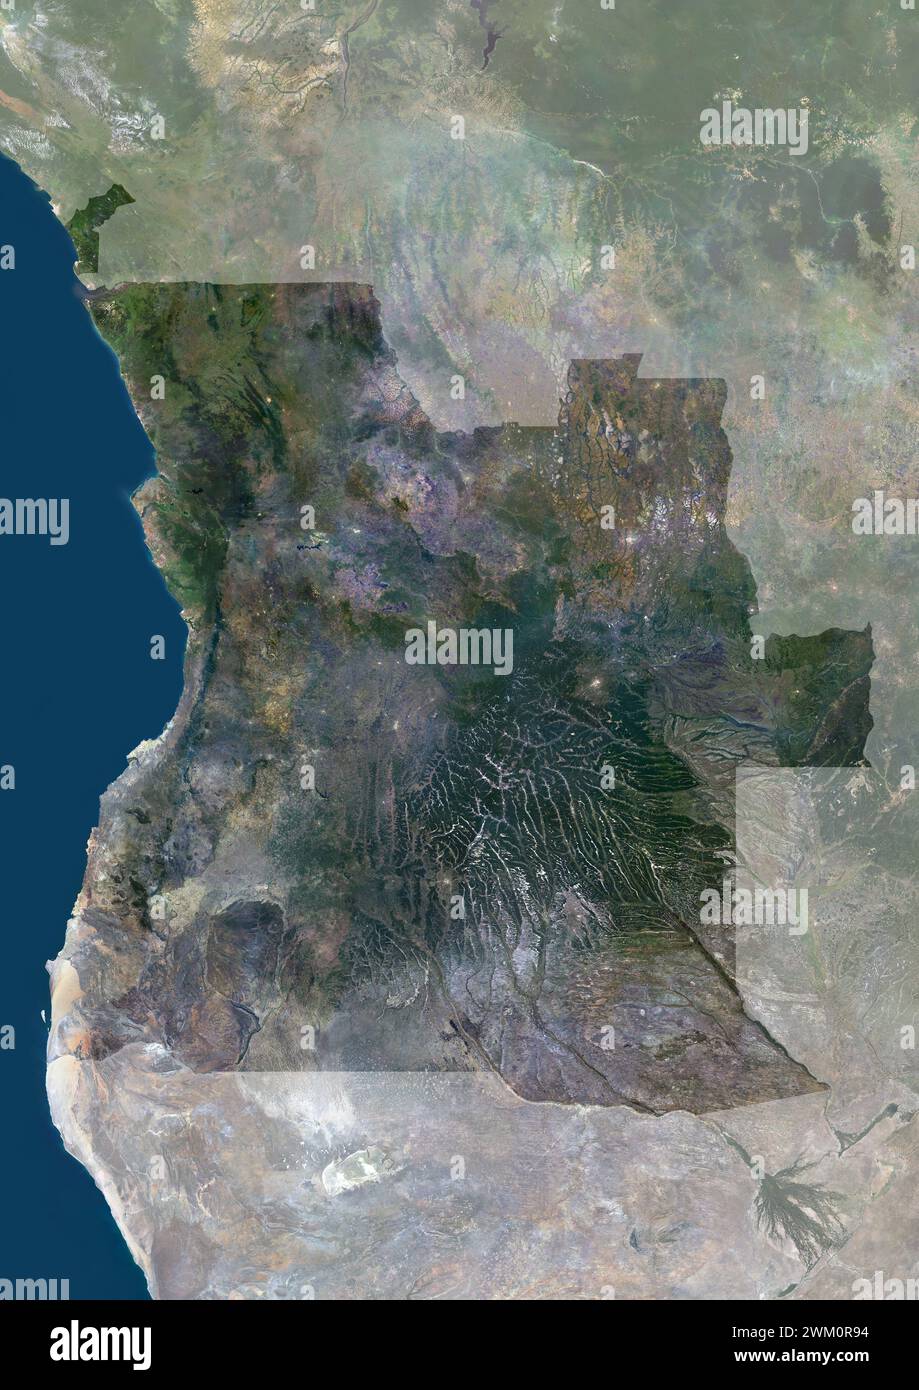 Immagine satellitare a colori dell'Angola, con maschera. Foto Stock